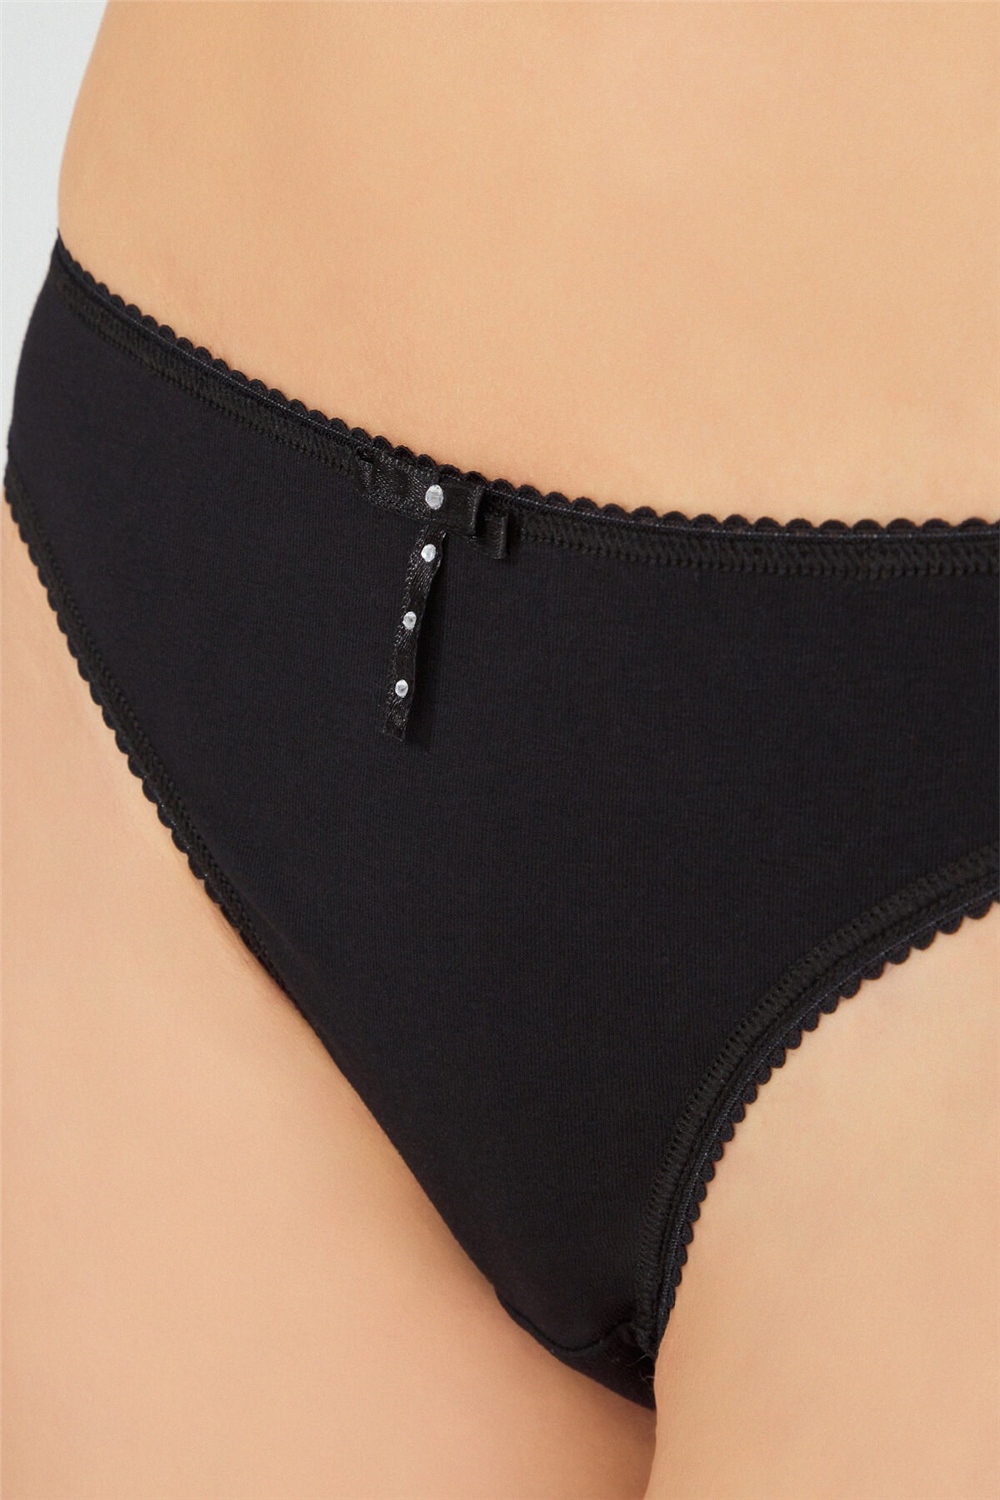 cotton-brazilian-women-panty-lace-back-ch4902-black-1-4